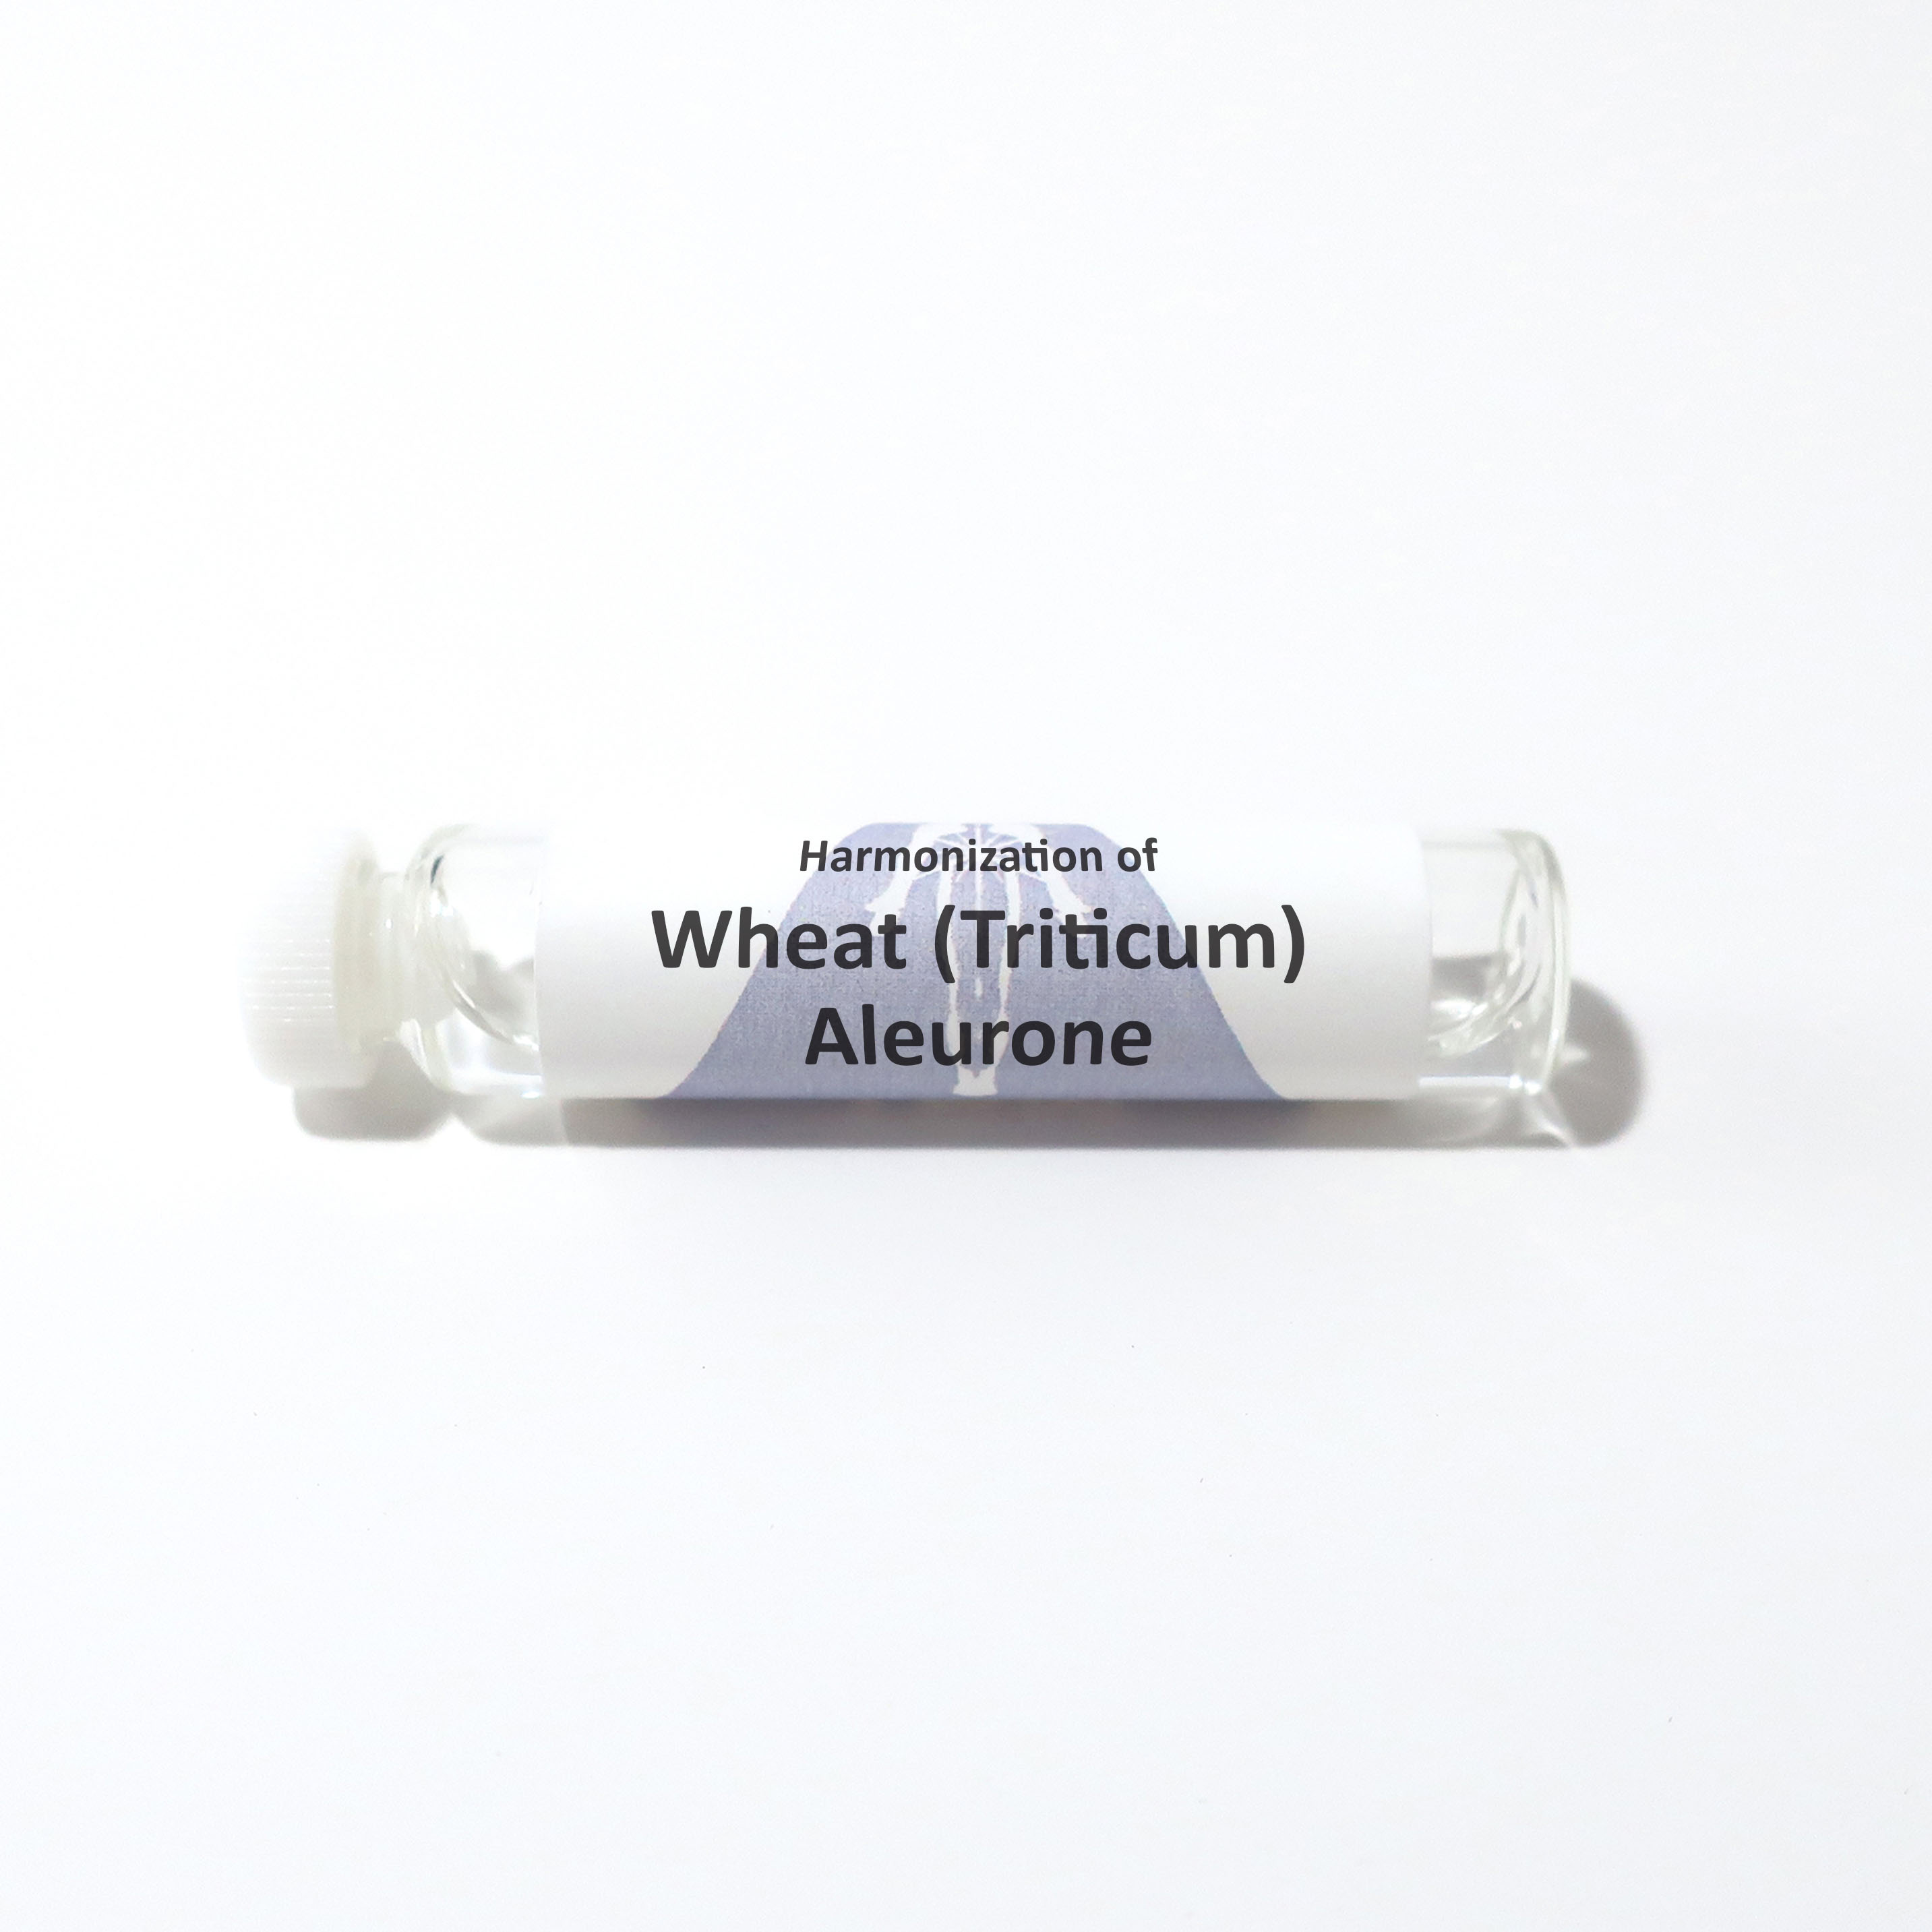 Wheat (Triticum) Aleurone